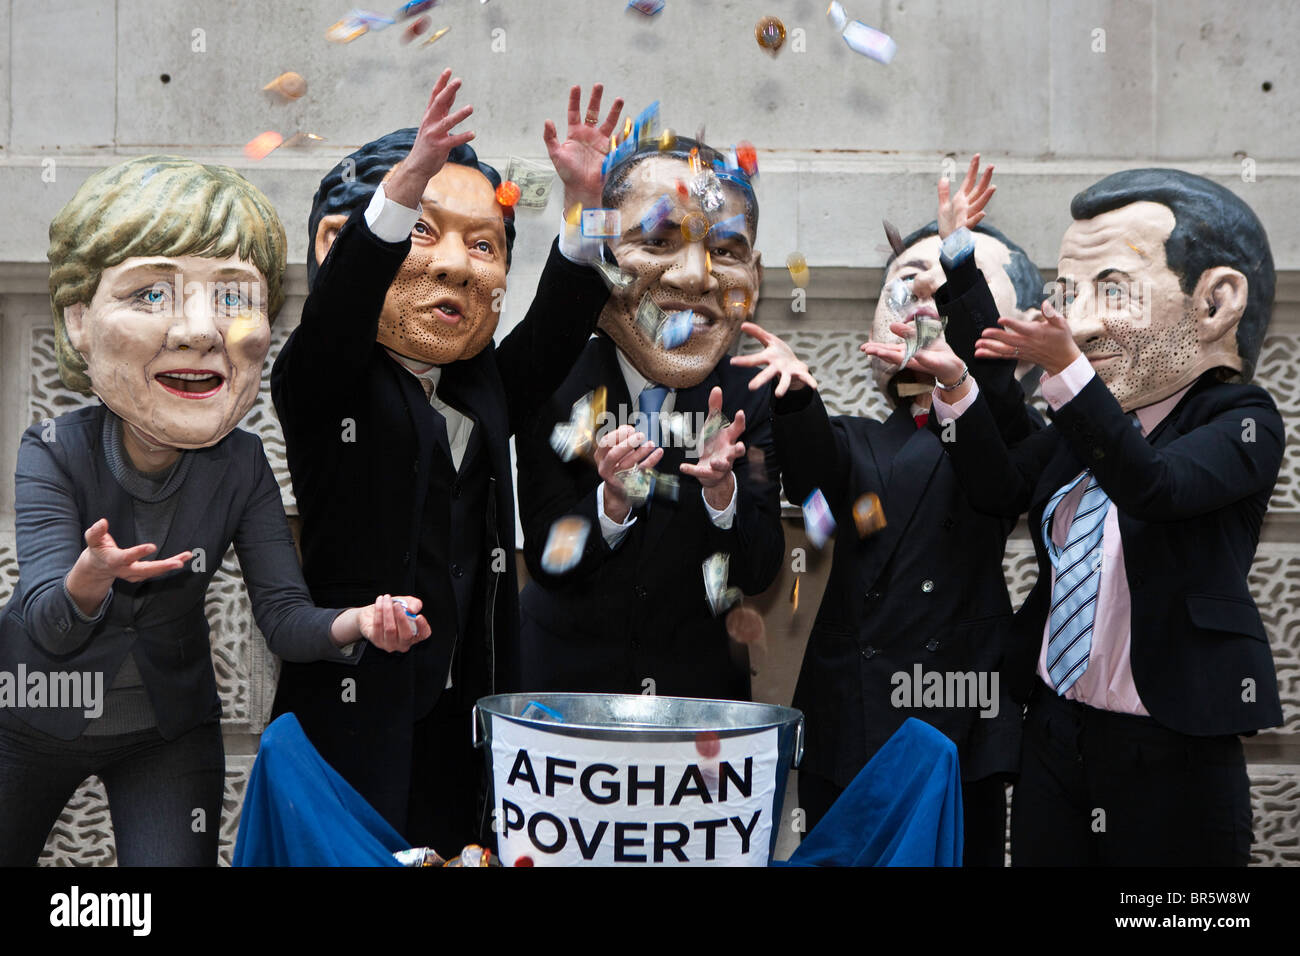 Les manifestants portant des masques et habillés comme les grands dirigeants du monde 'en jetant de l'argent à la pauvreté en Afghanistan'. Banque D'Images